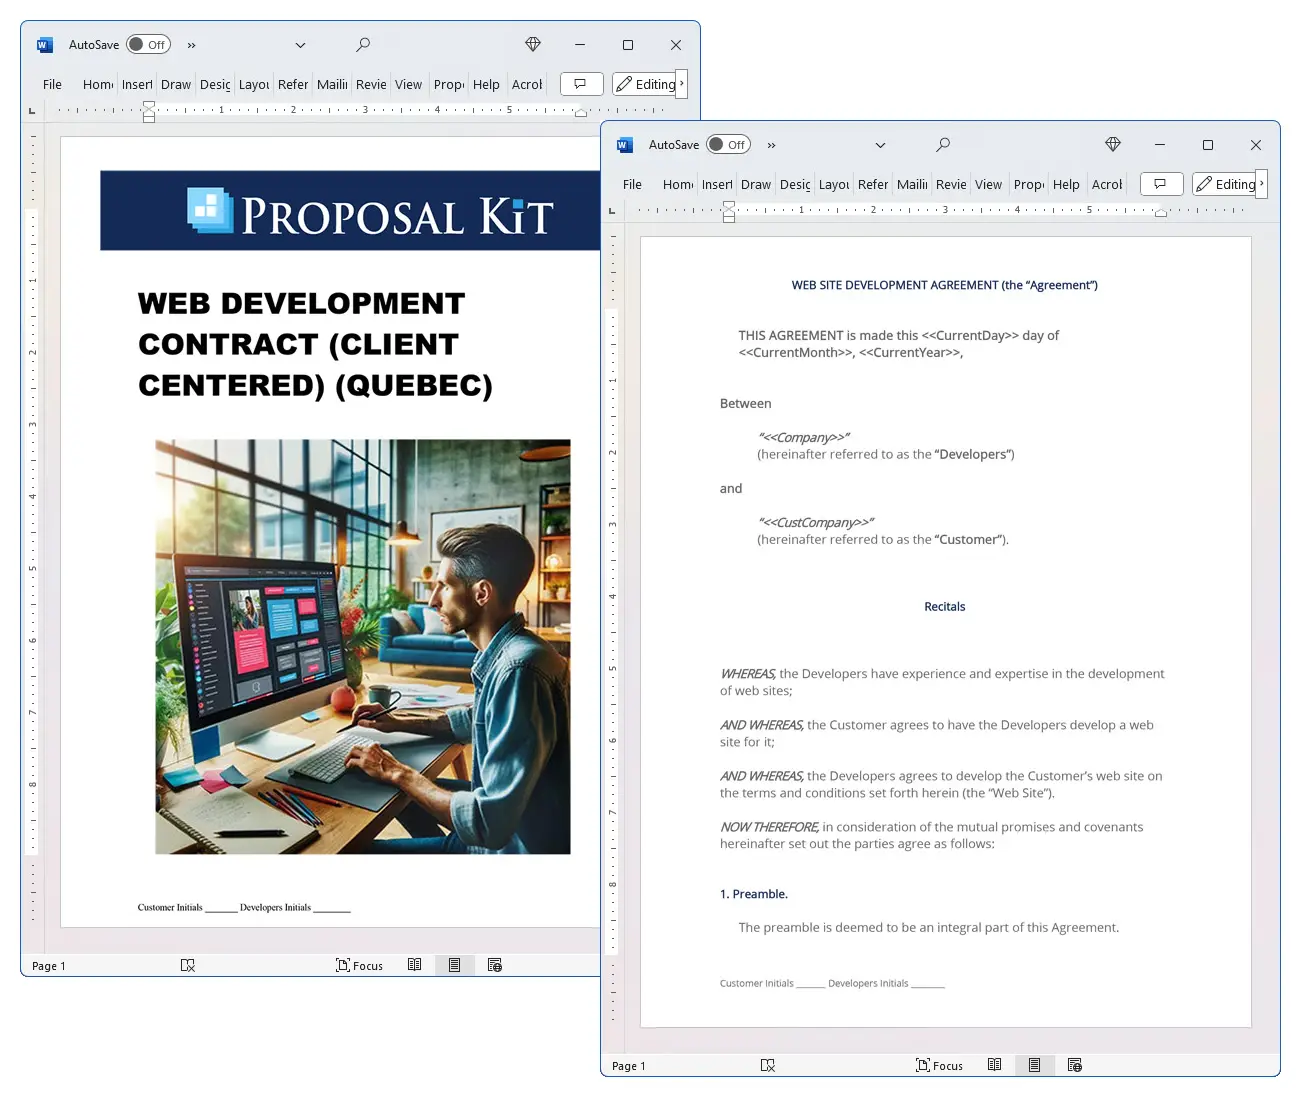 Web Development Contract (Client Centered) (Quebec) Concepts